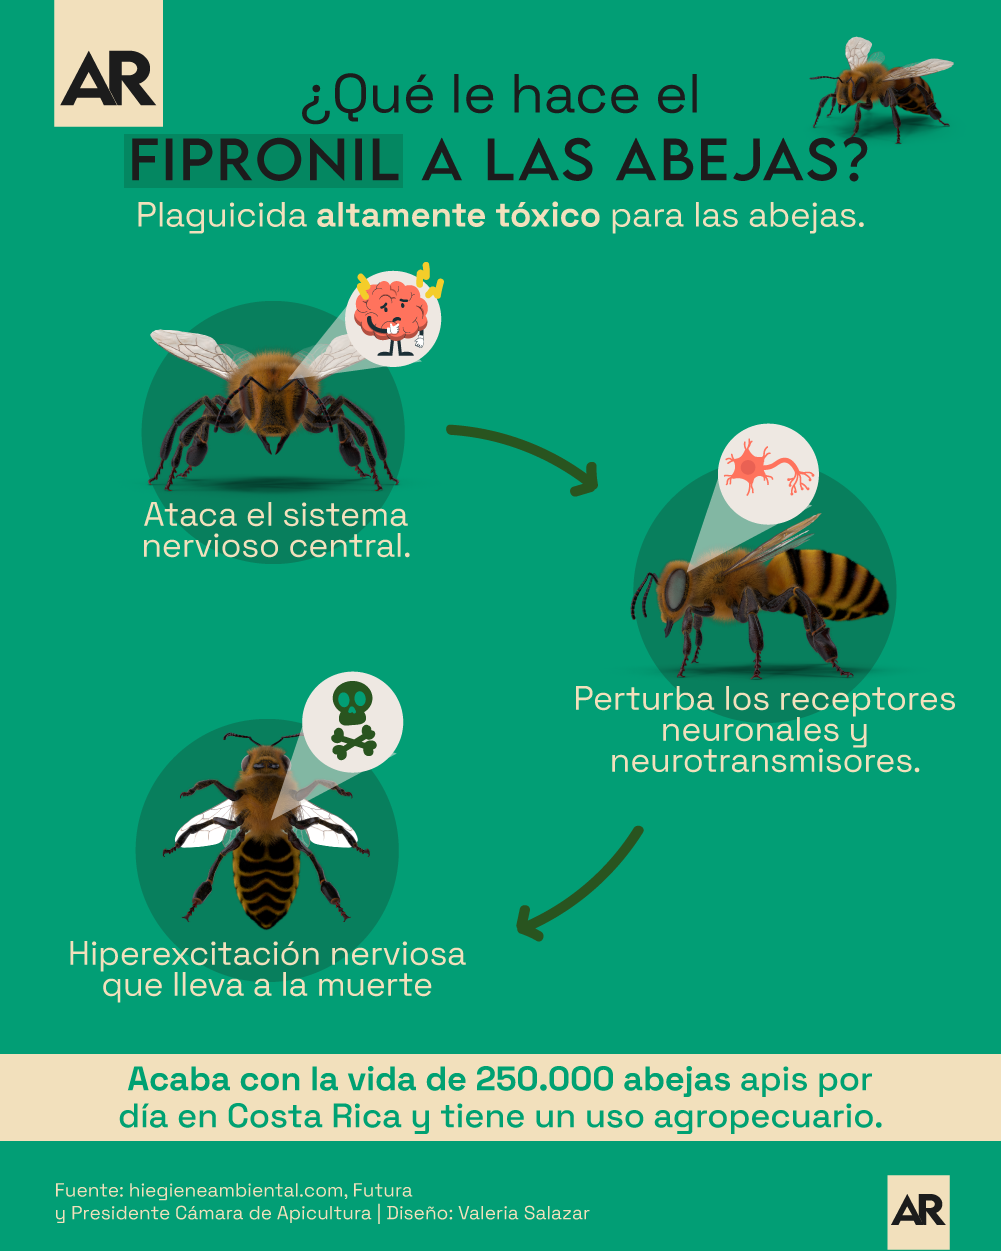 Fipronil,Abejas,Plaguicida,Muerte abejas